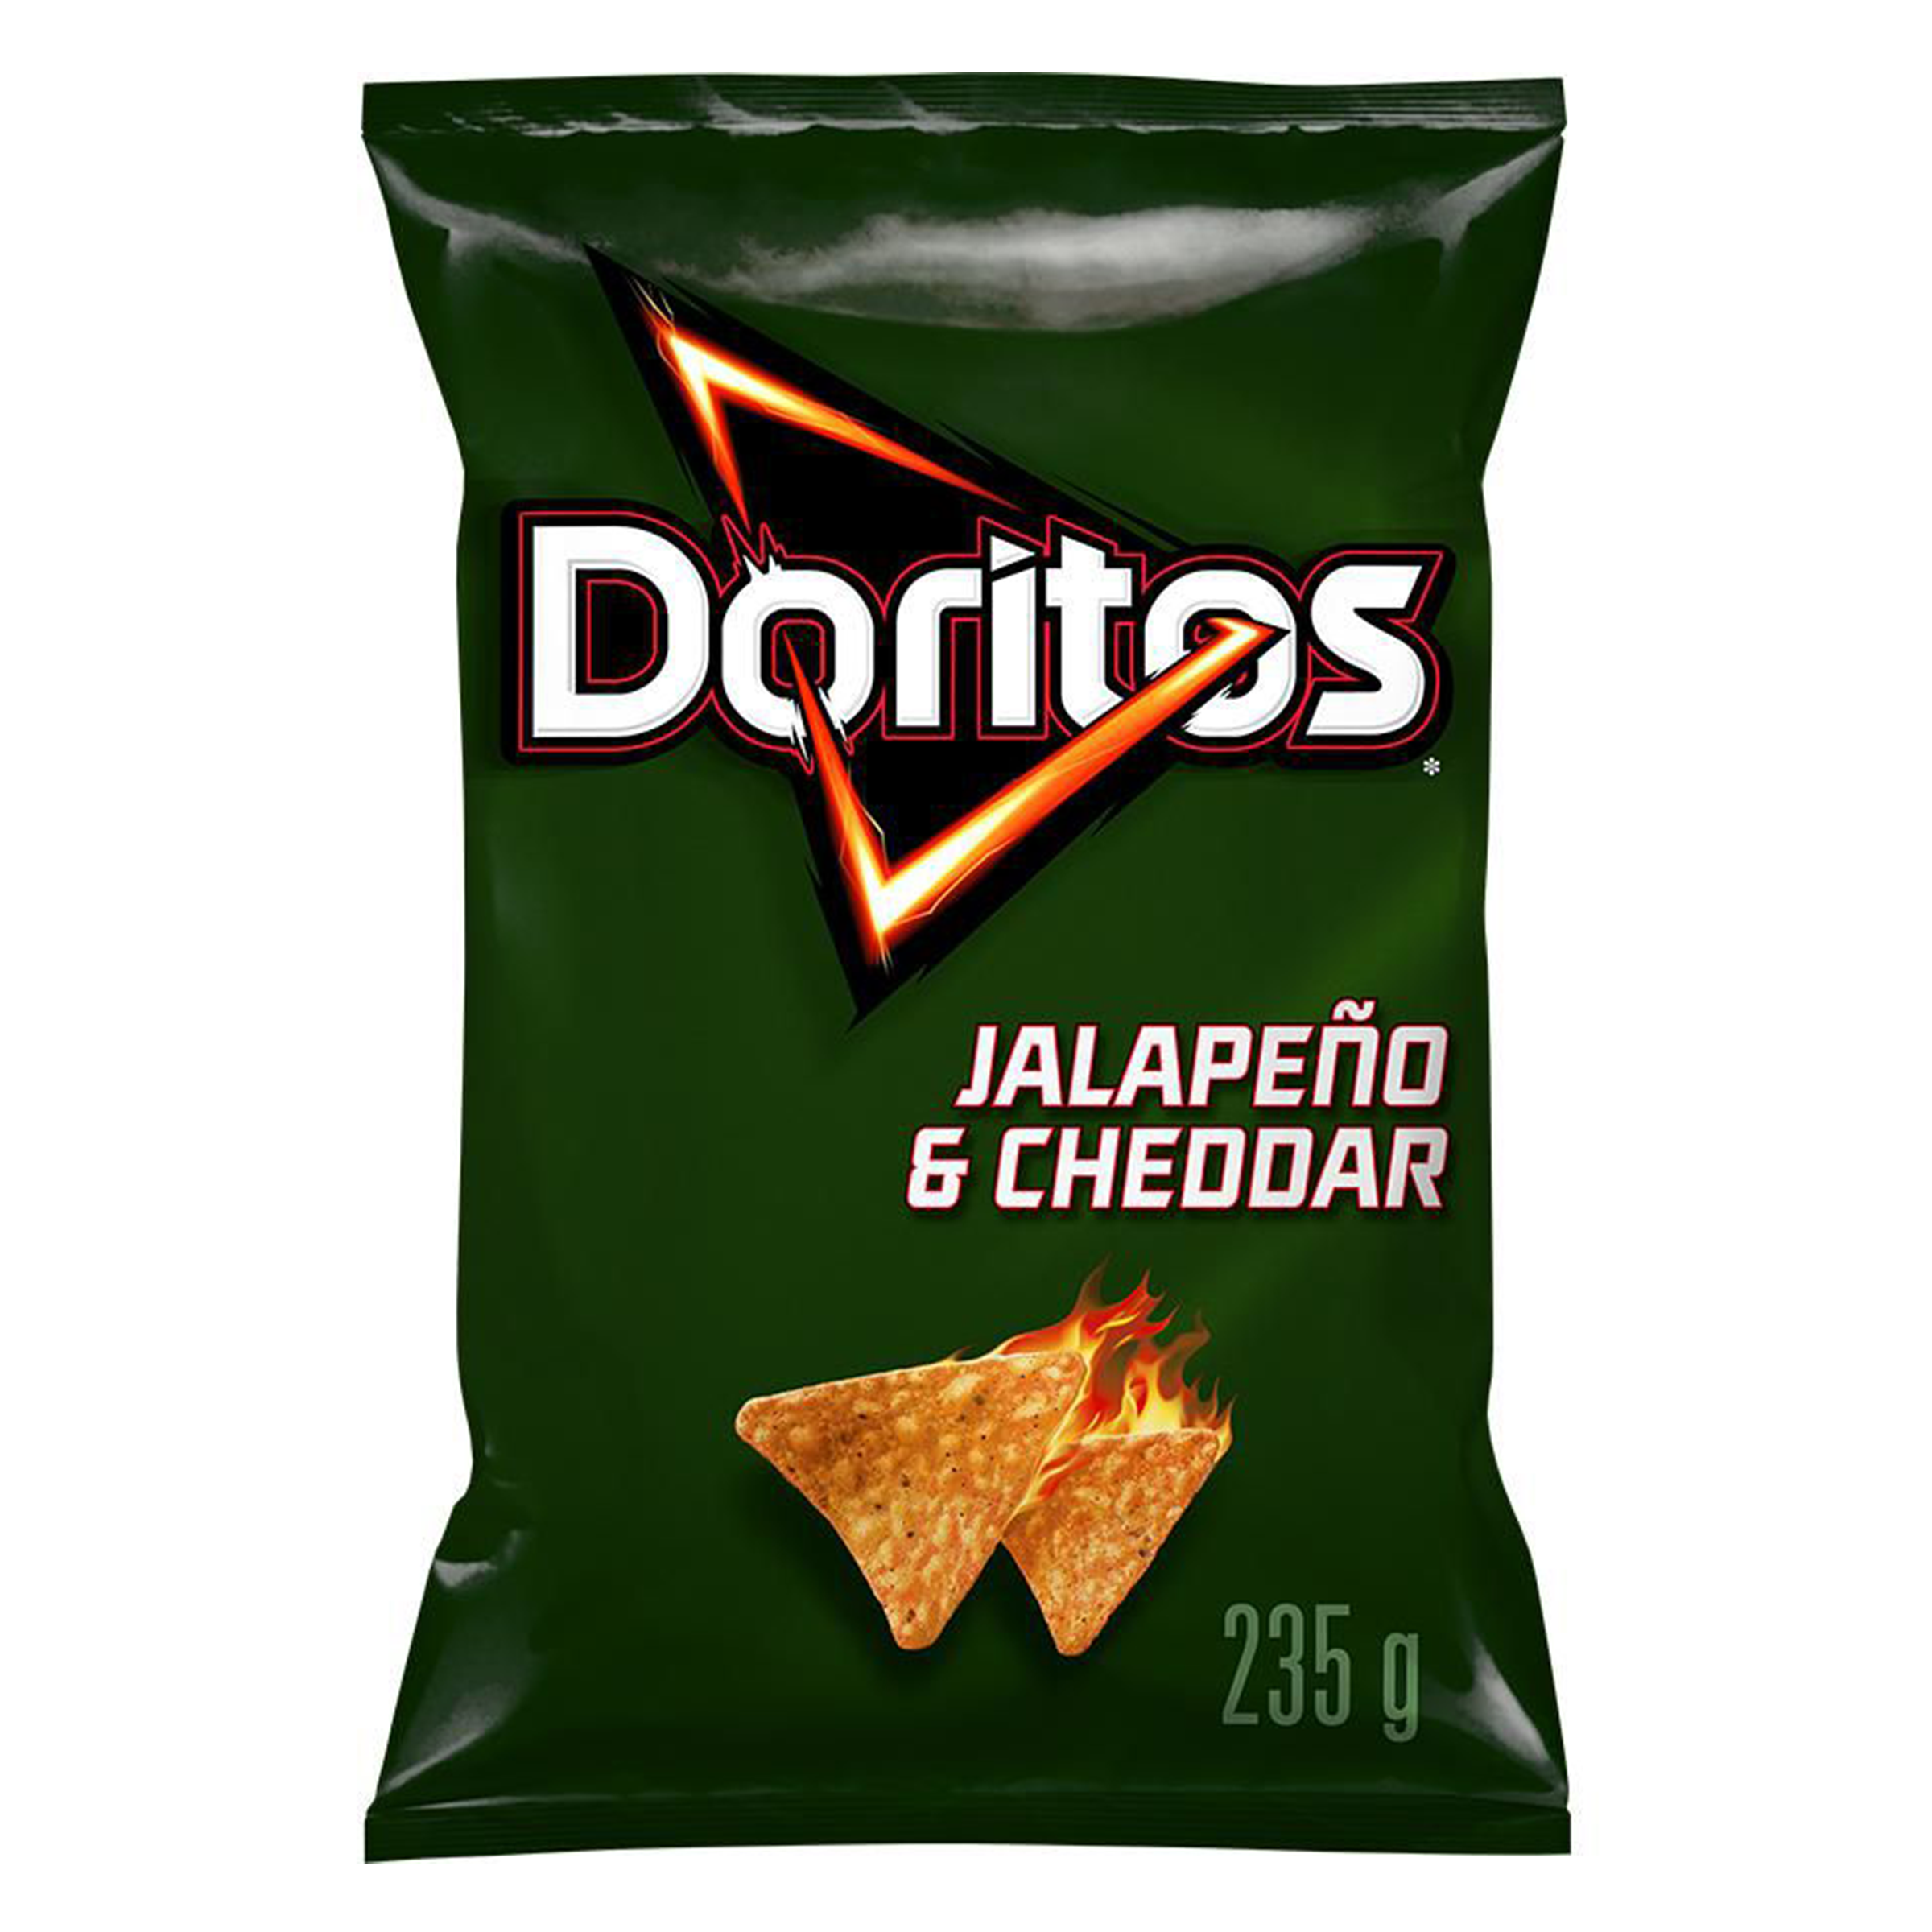 Doritos - Jalapeño & Cheddar